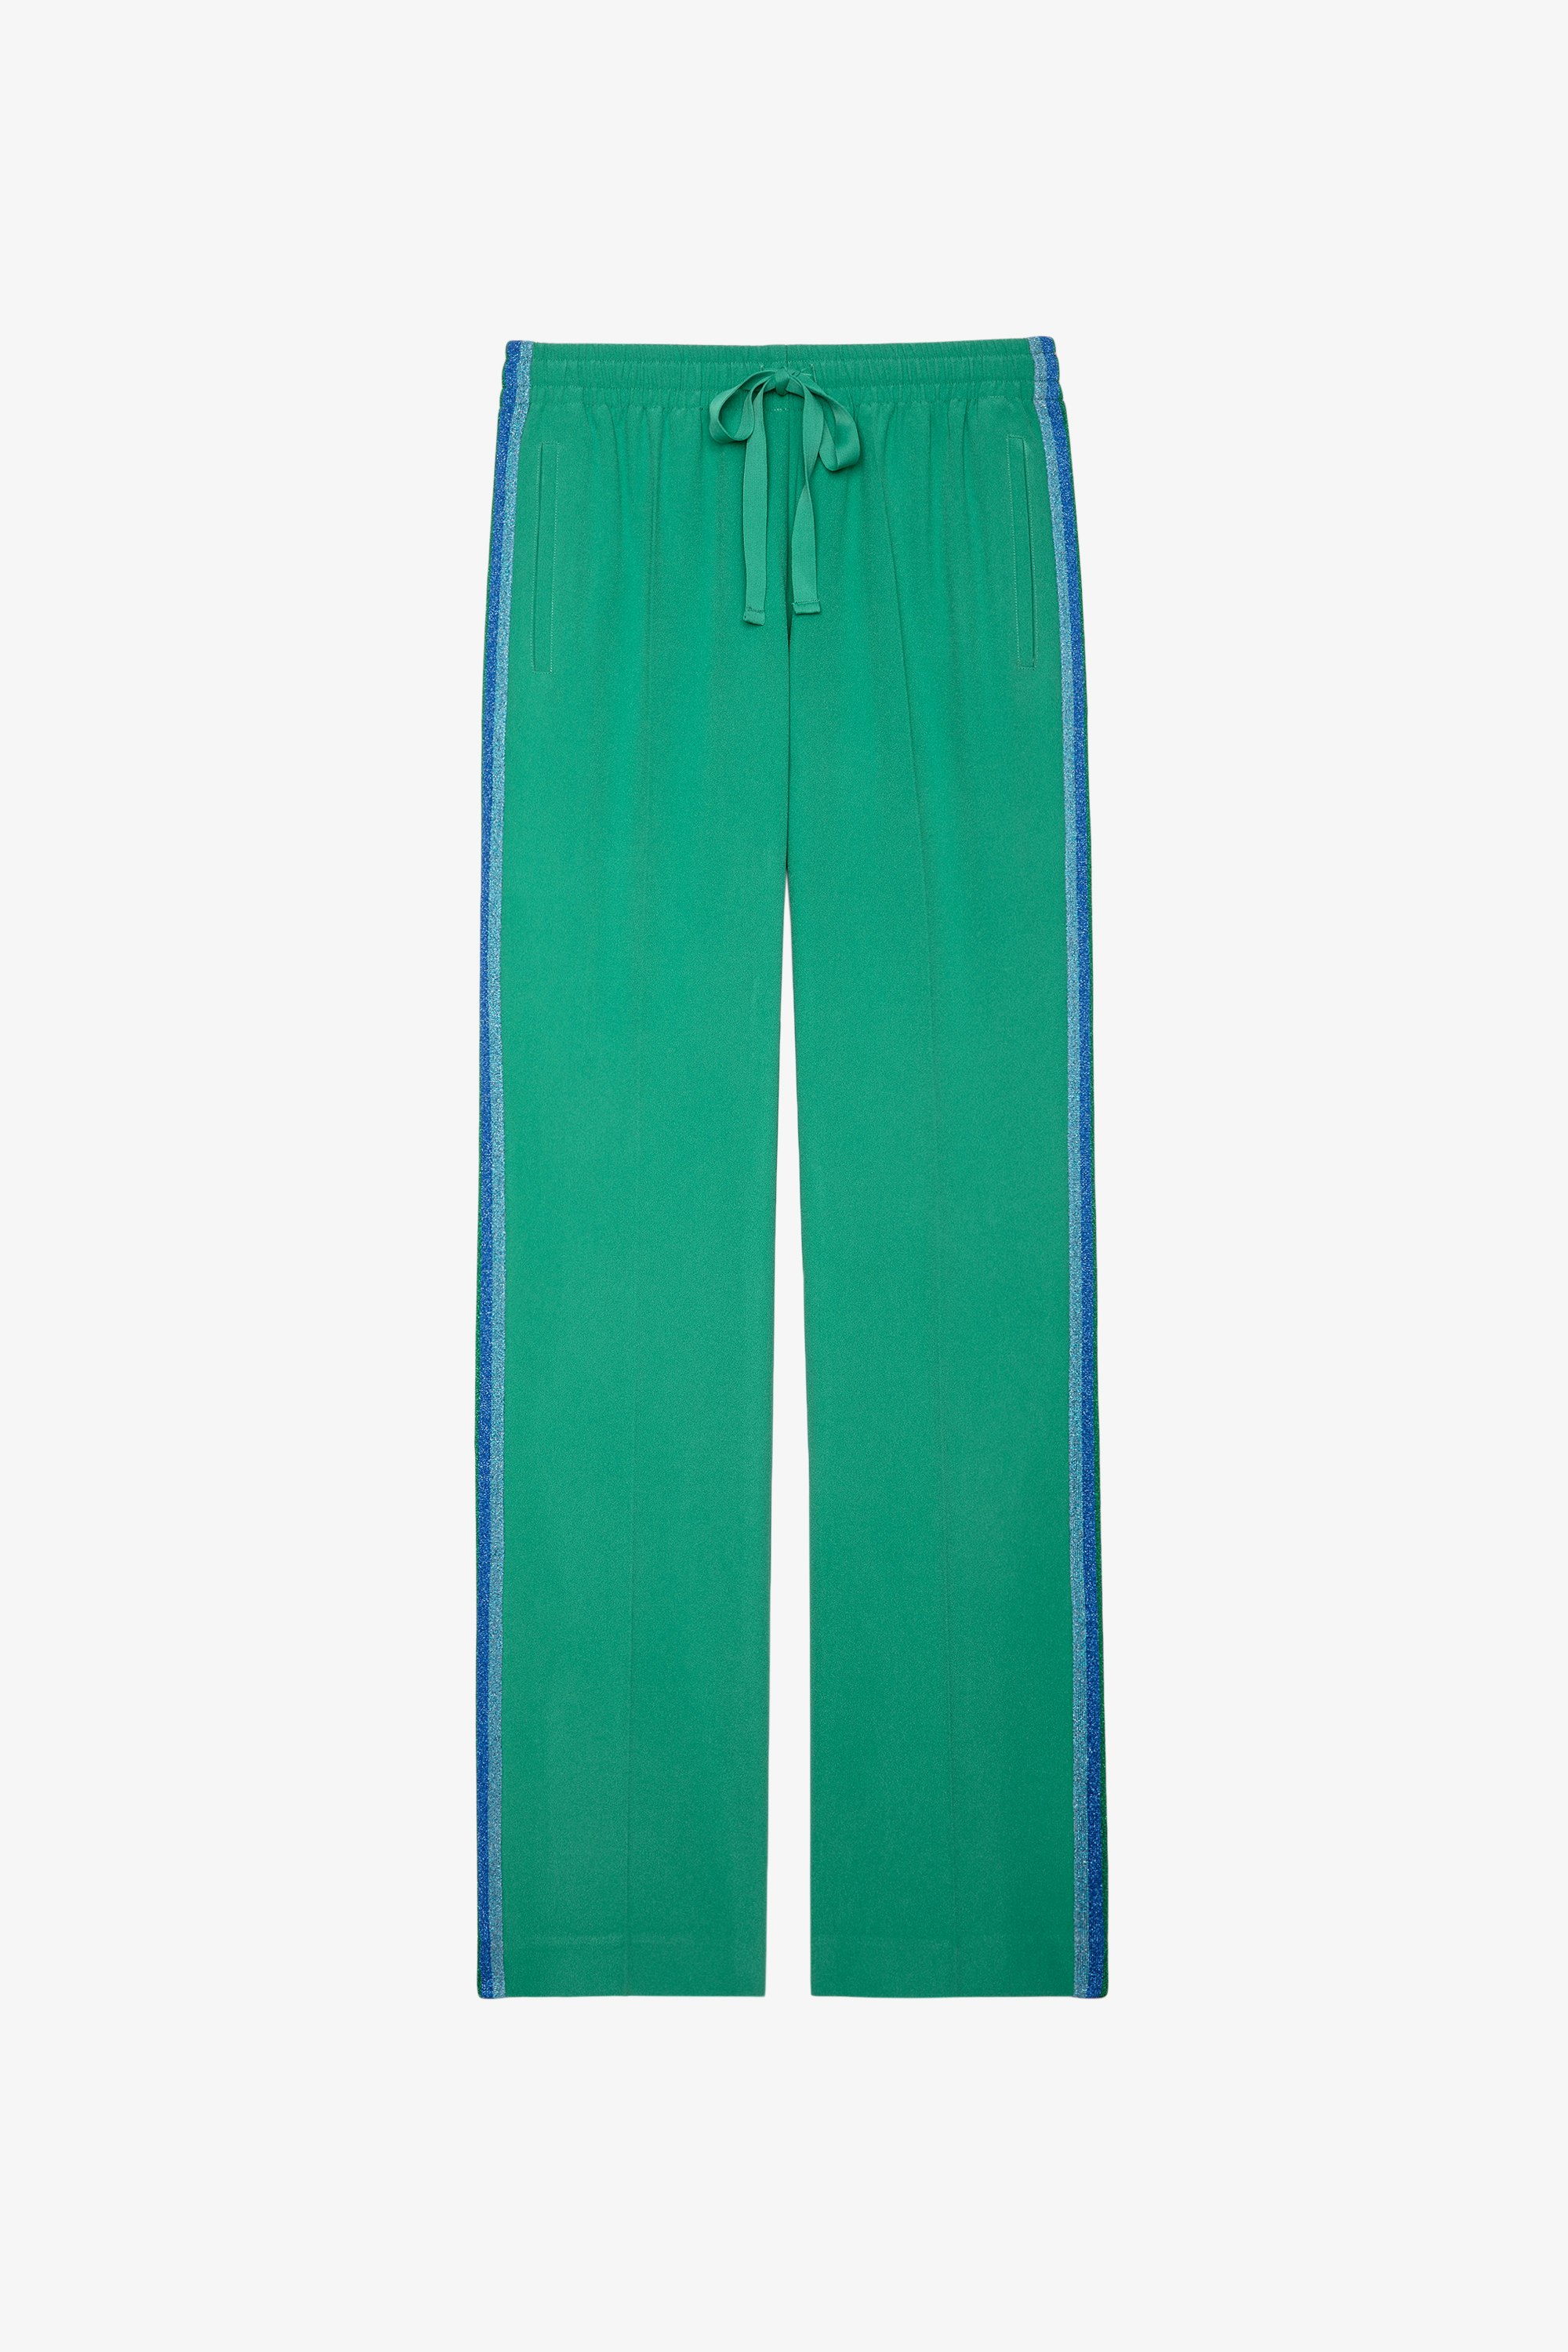 Hose Pomy Crêpe Fließende grüne Hose mit seitlichen Glitzerstreifen für Damen